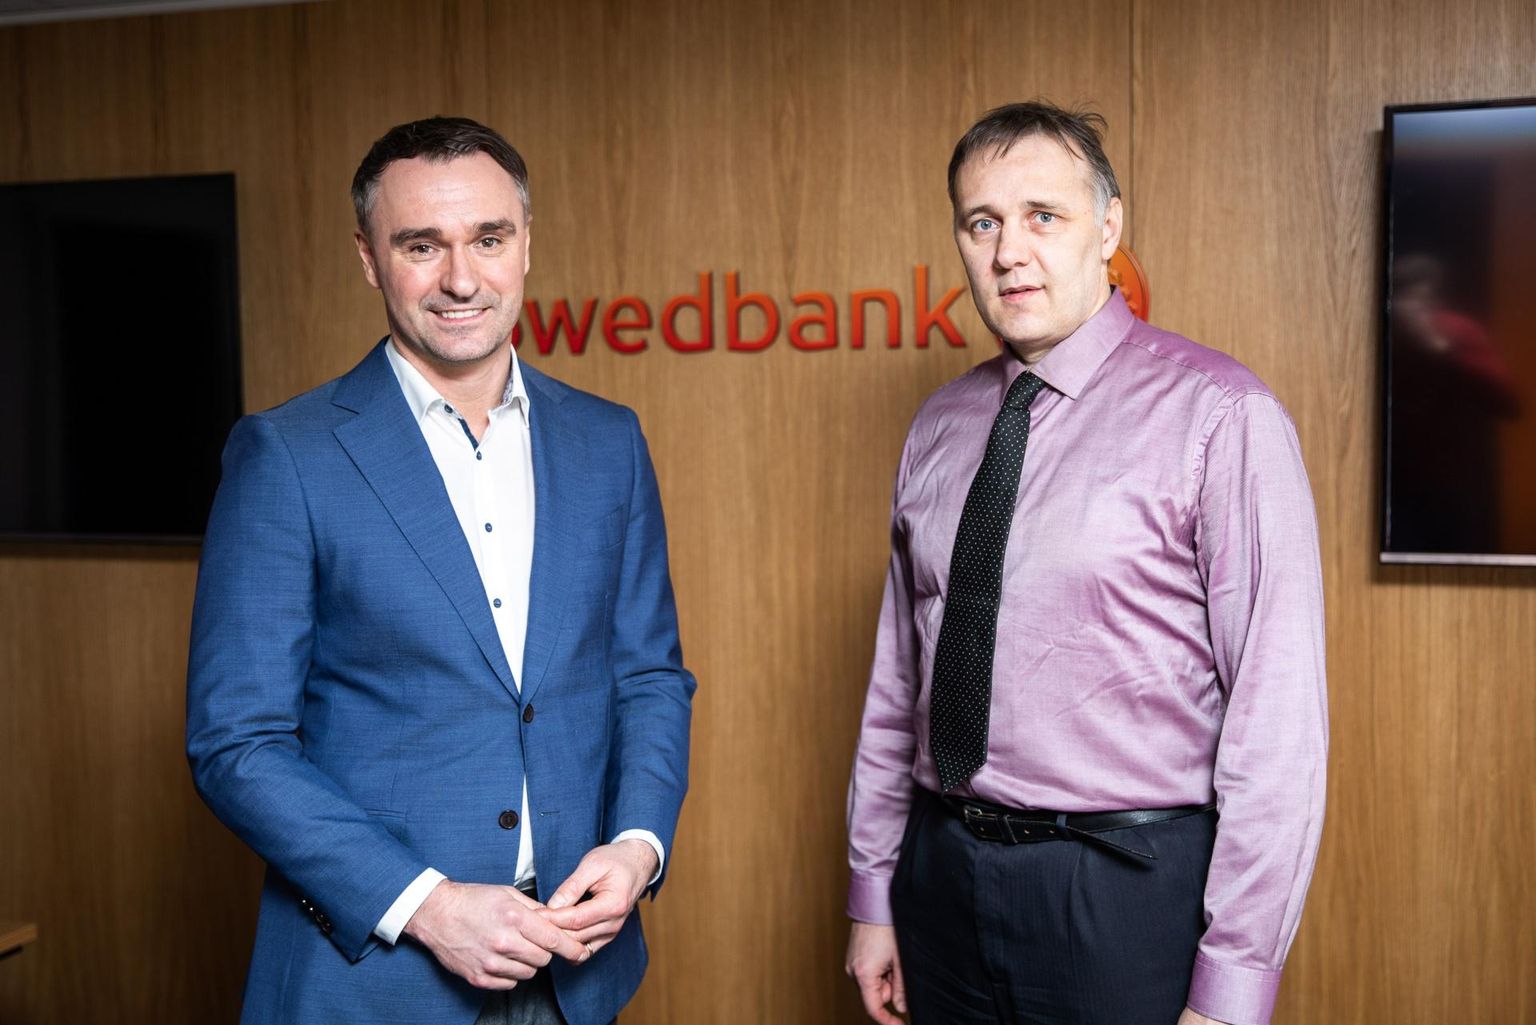 Swedbank eraisikute panganduse juht Tarmo Ulla (vasakul) ja Swedbank investeeringute strateeg Tarmo Tanilas.